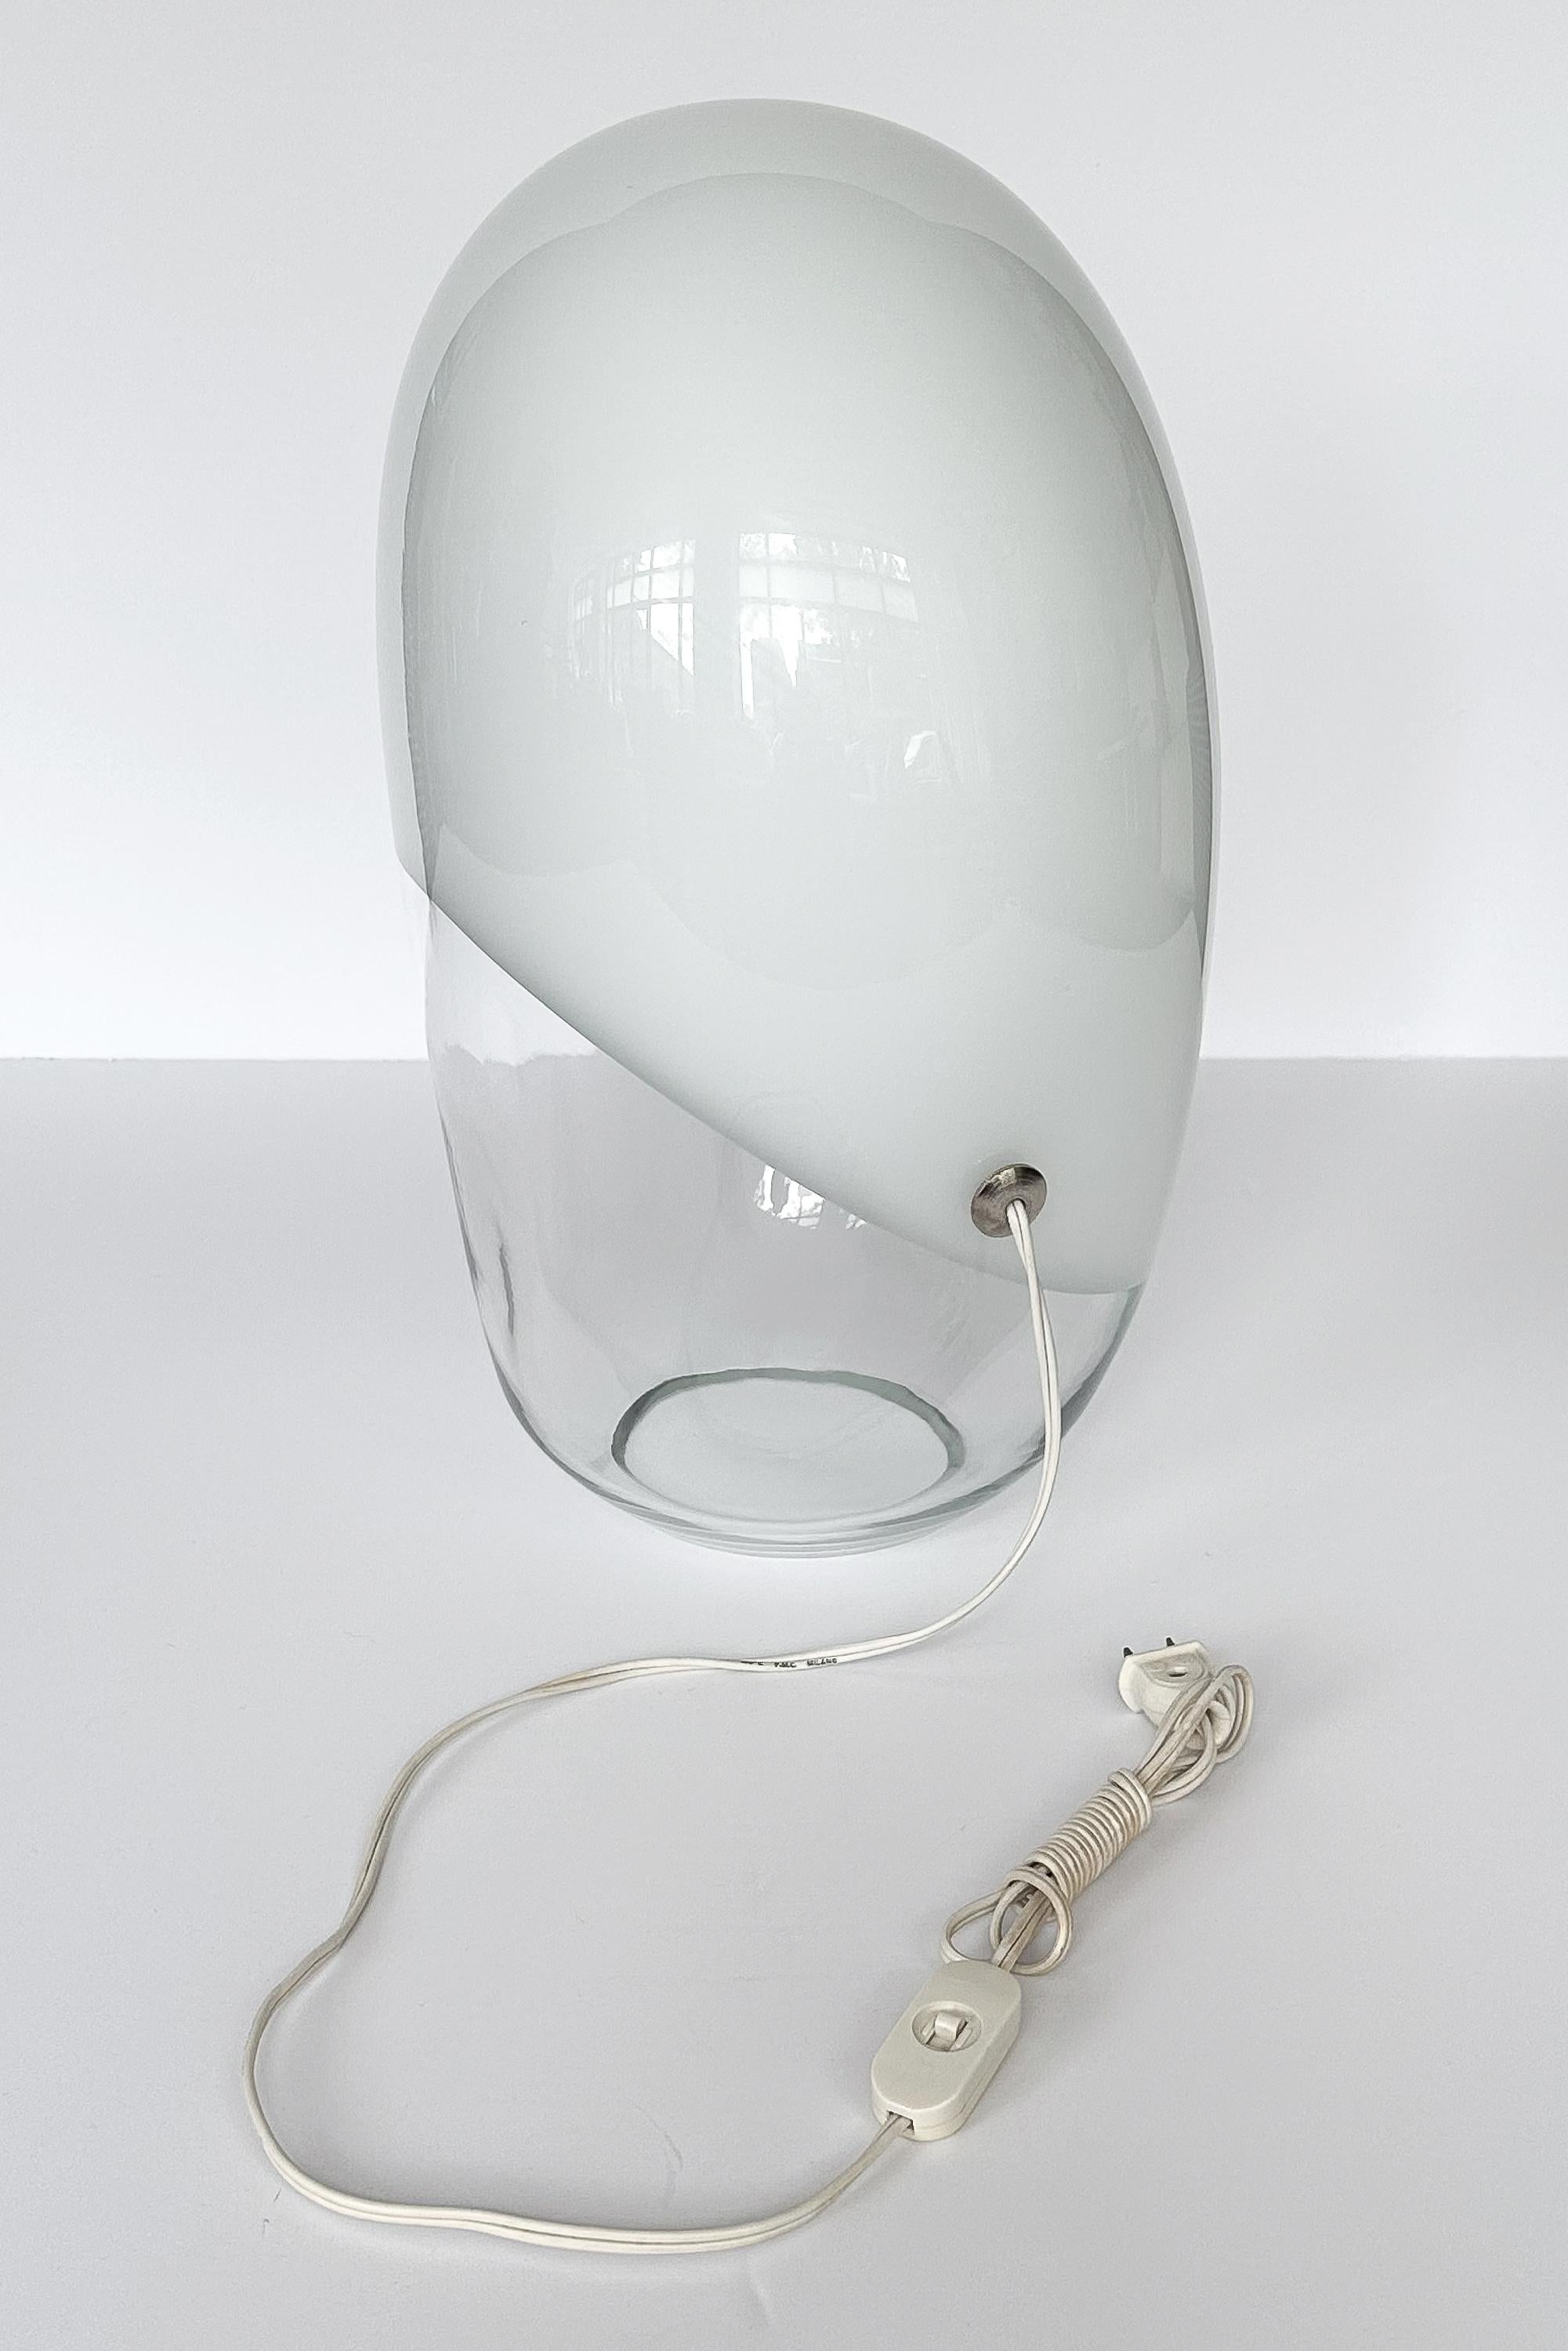 Vistosi Nevodo Table Lamp Model L284 by Gino Vistosi 3